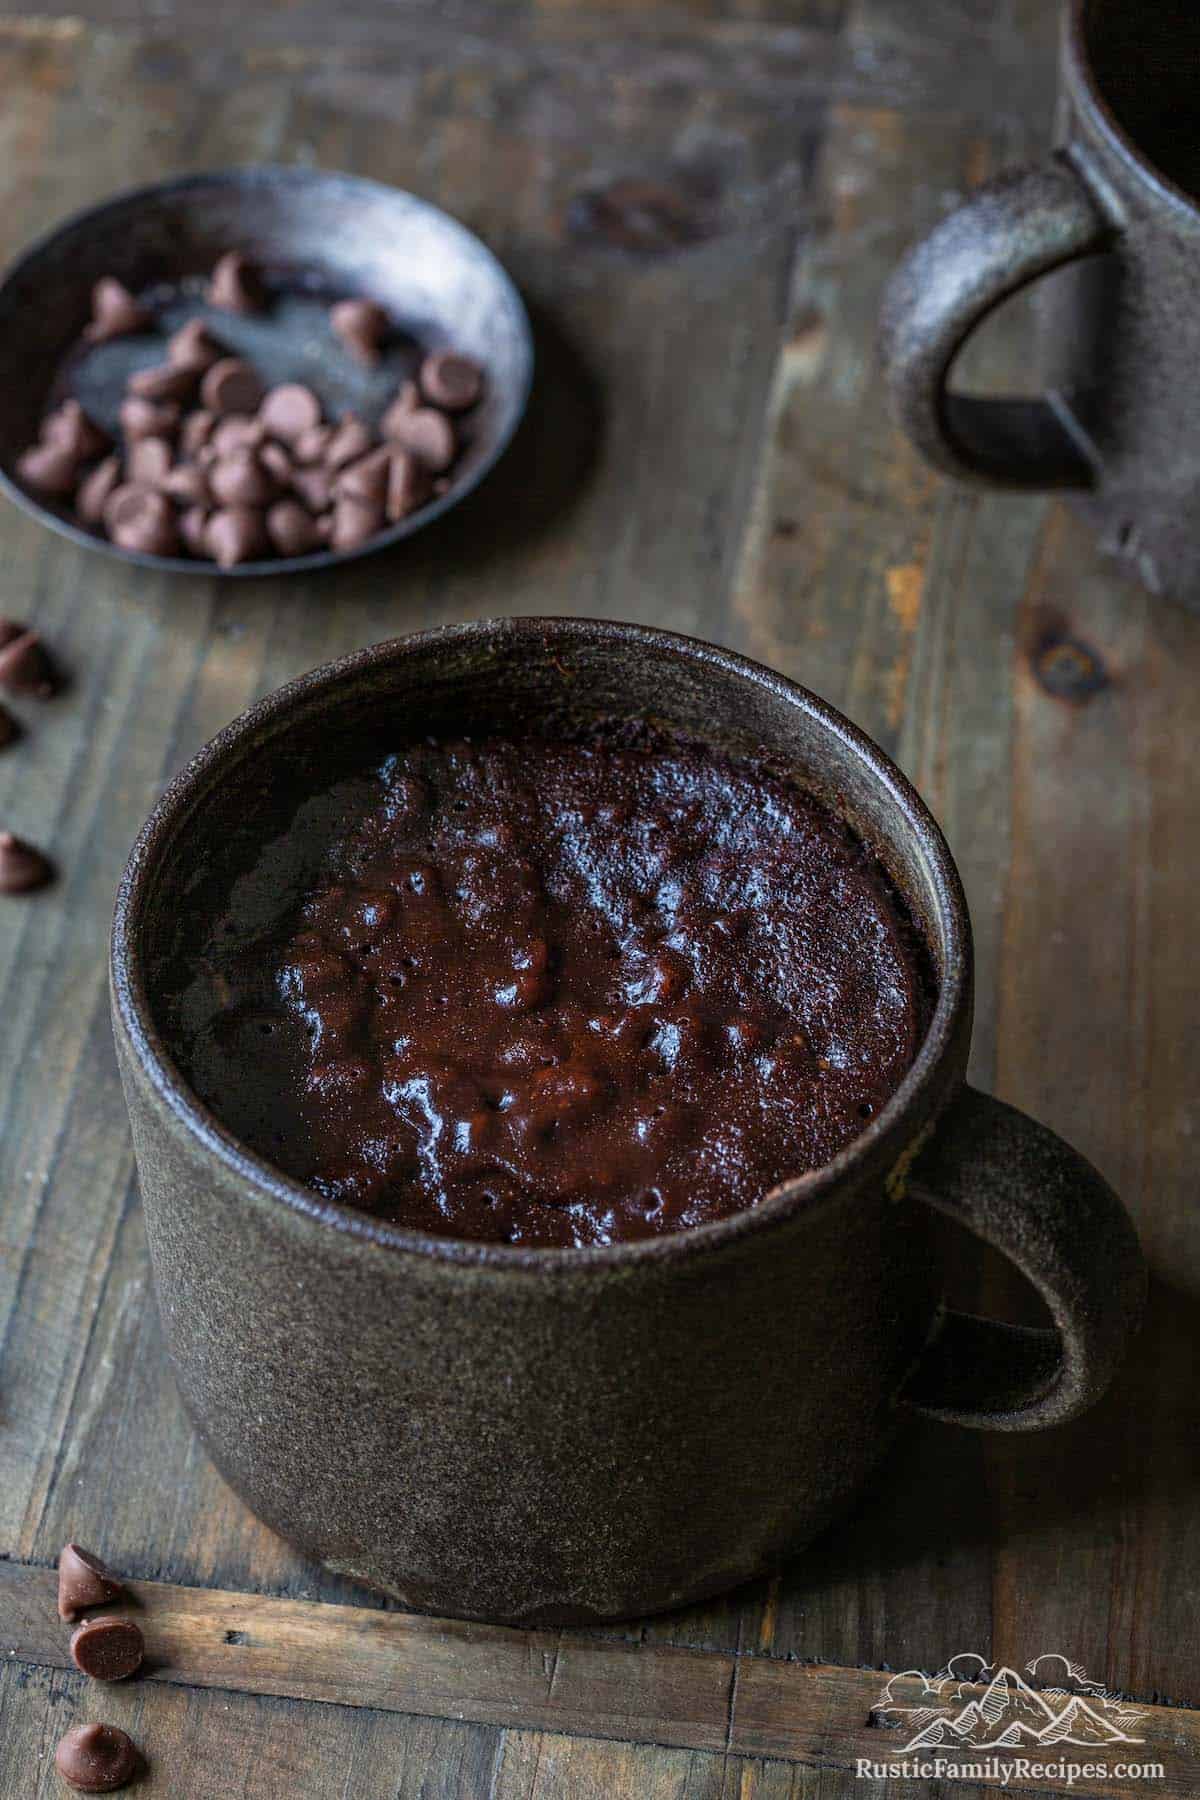 A simple brownie in a mug